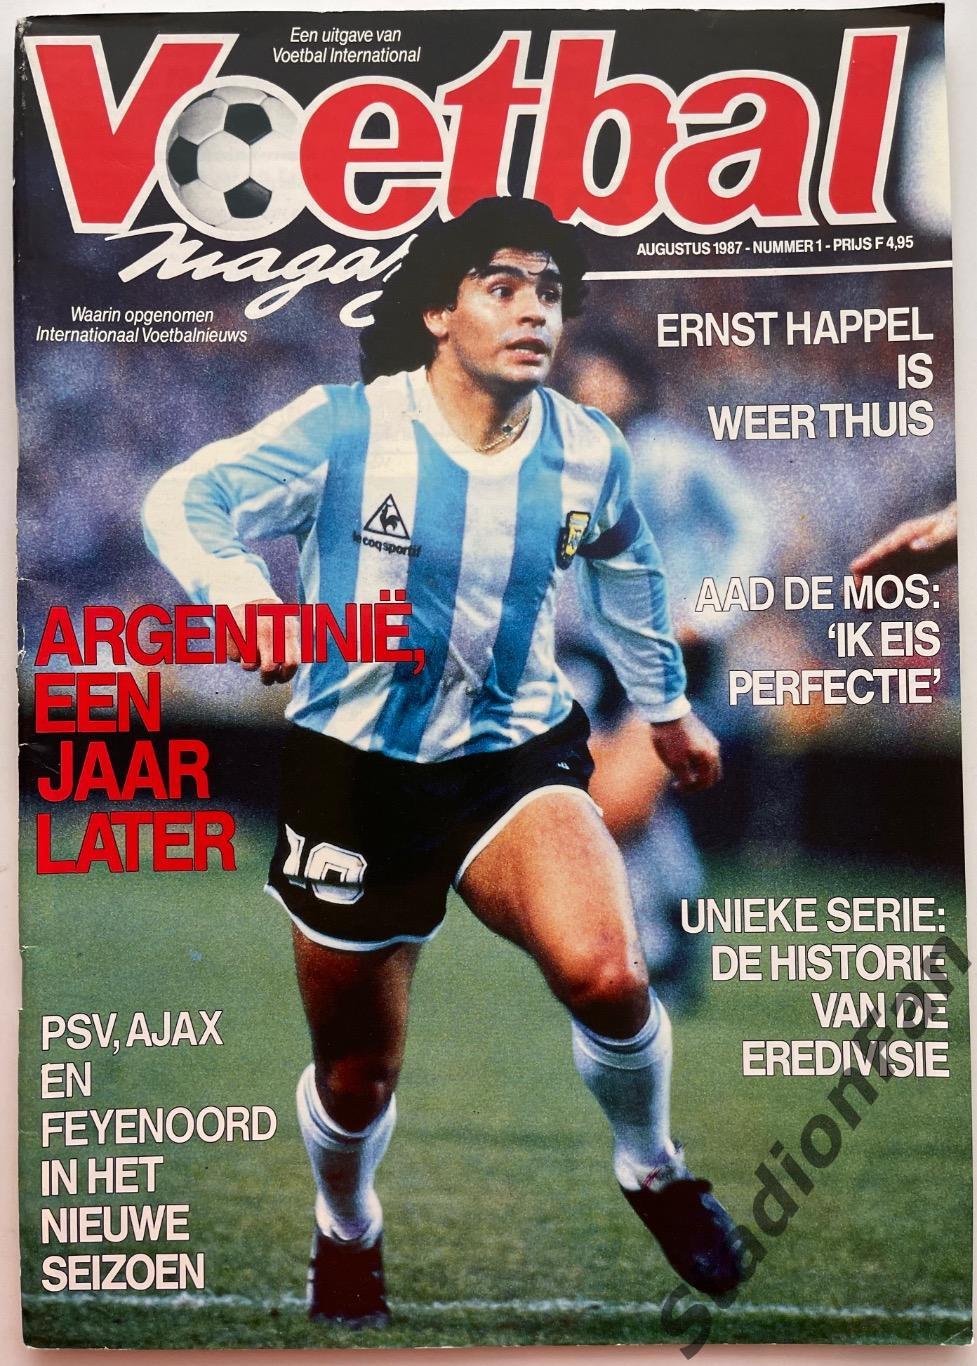 Журнал Voetbal - 1985 год.